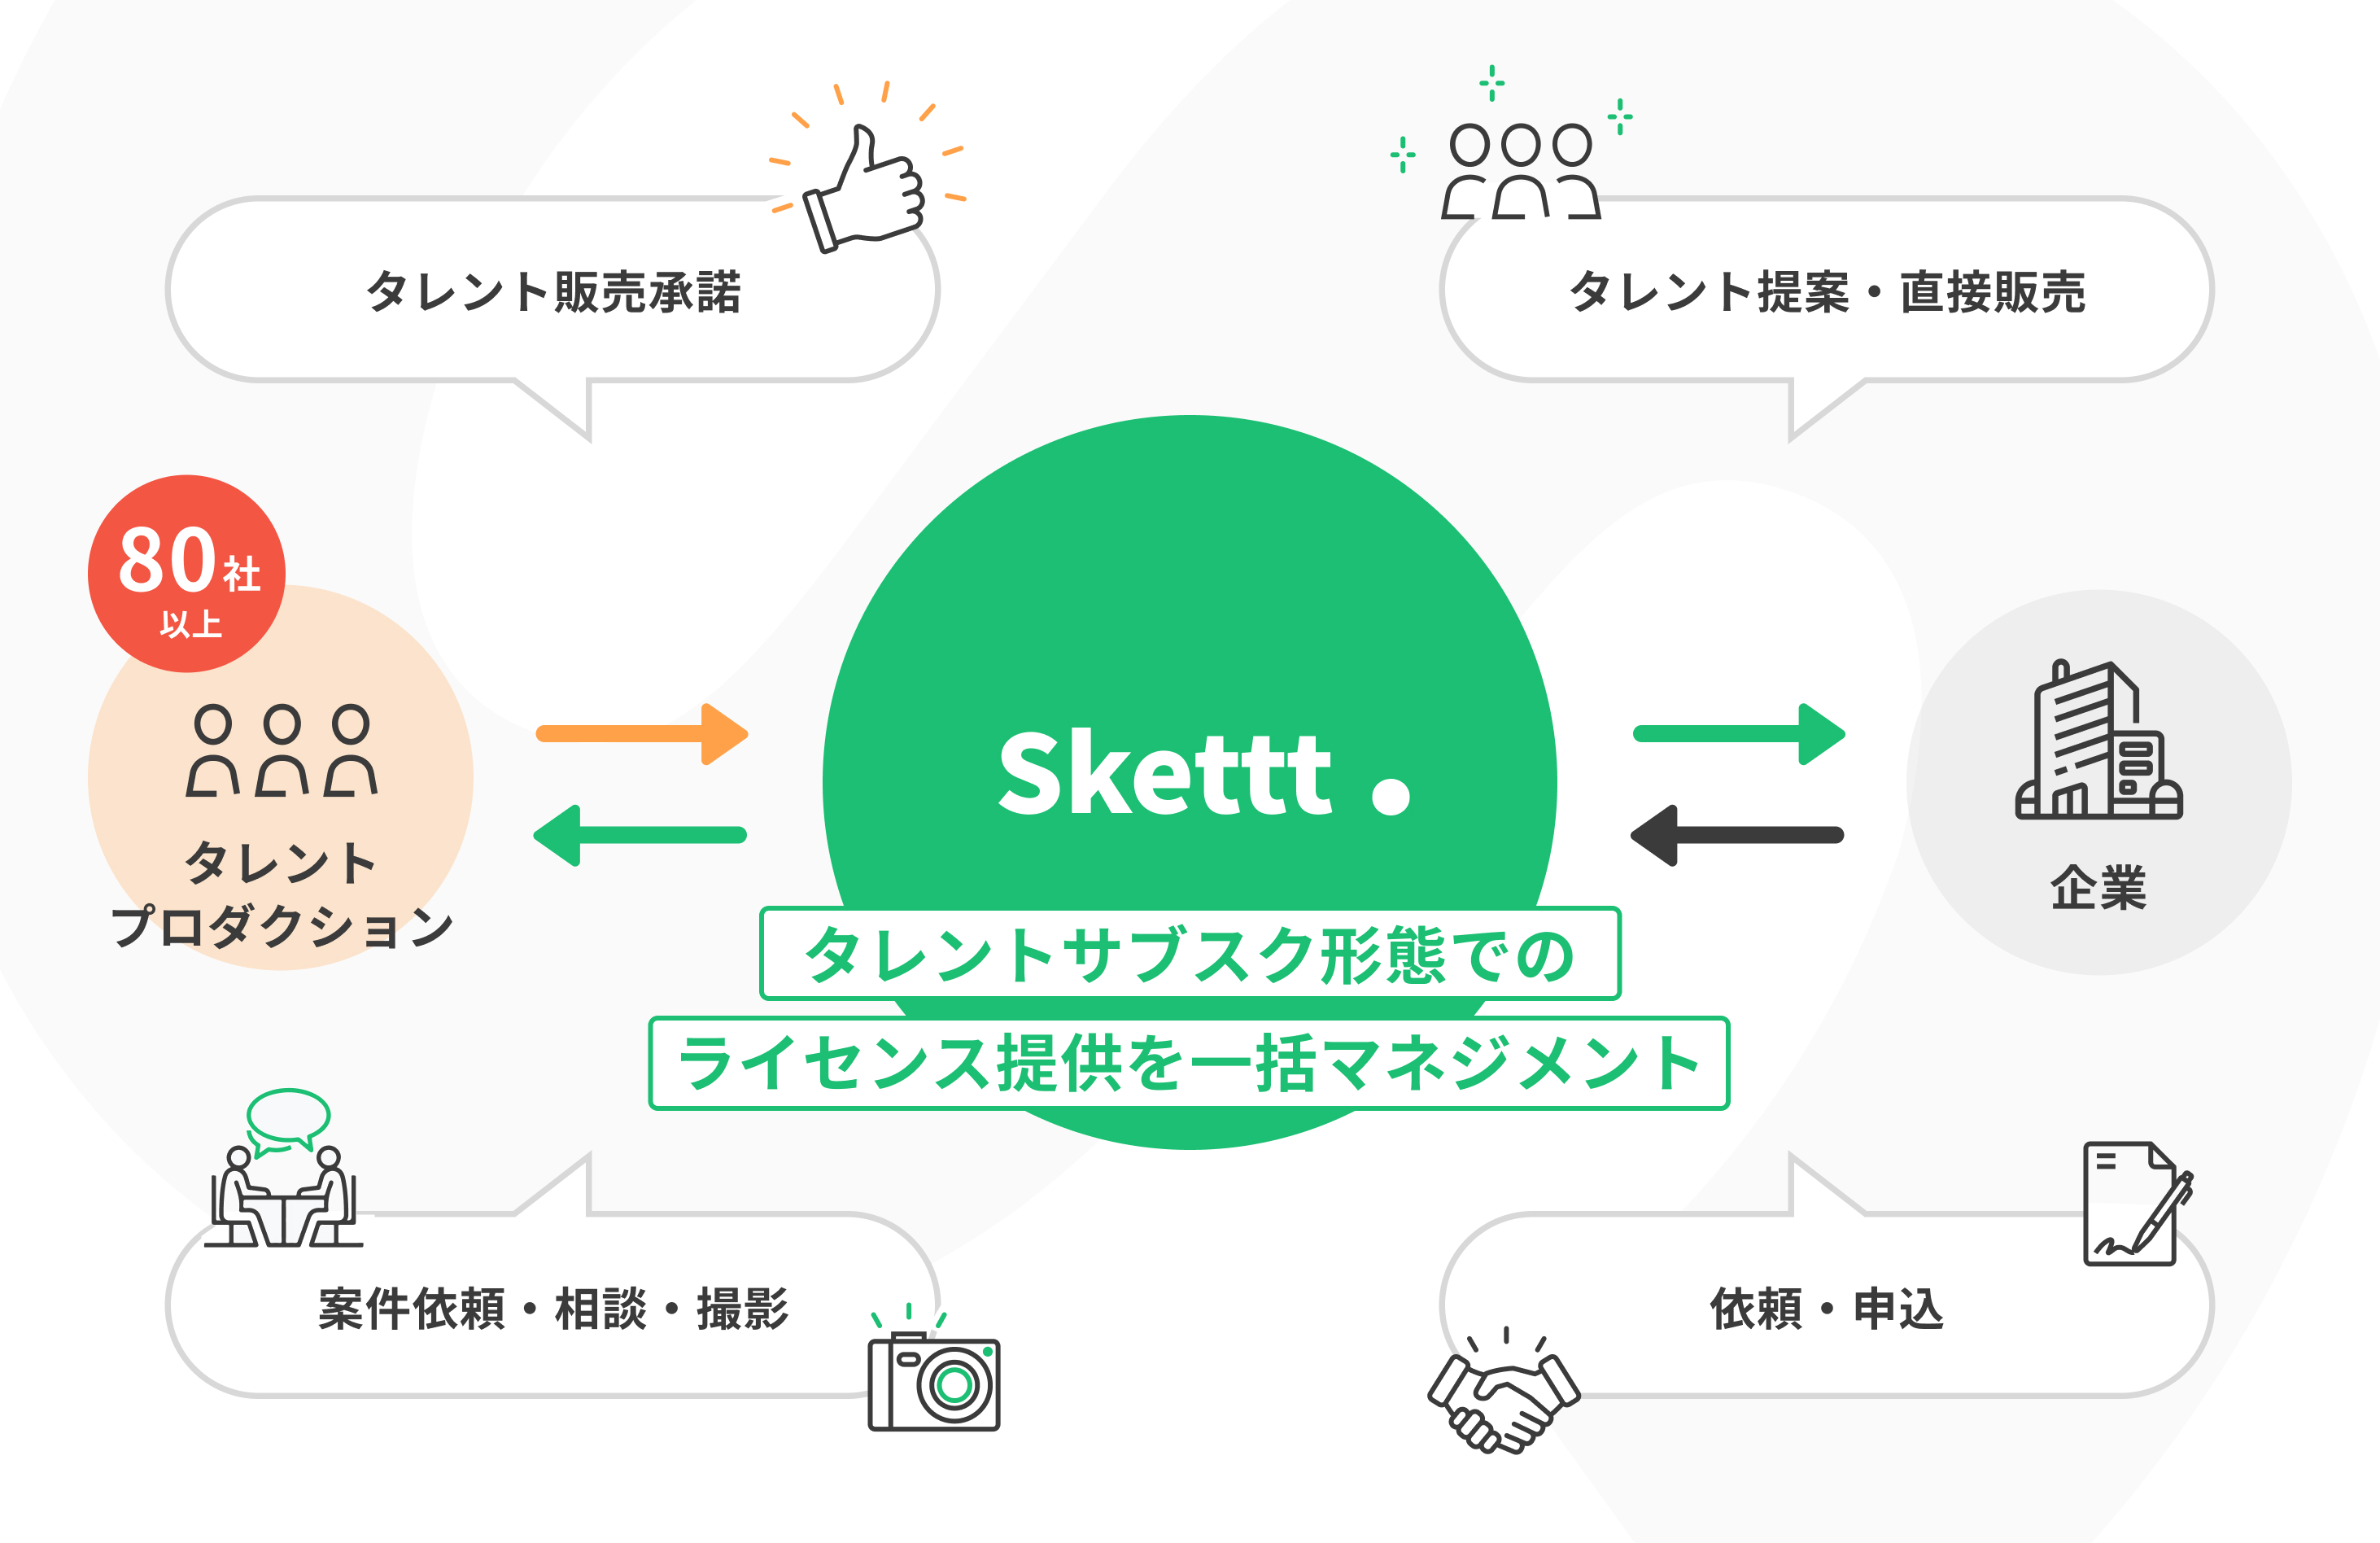 デビット伊東さん（オレガ所属）の宣伝素材が使い放題に！IPマーケティング包括支援サービス「Skettt（スケット）」に参加し、地方・中小企業のマーケティングを支援のサブ画像3_「Skettt」の仕組み